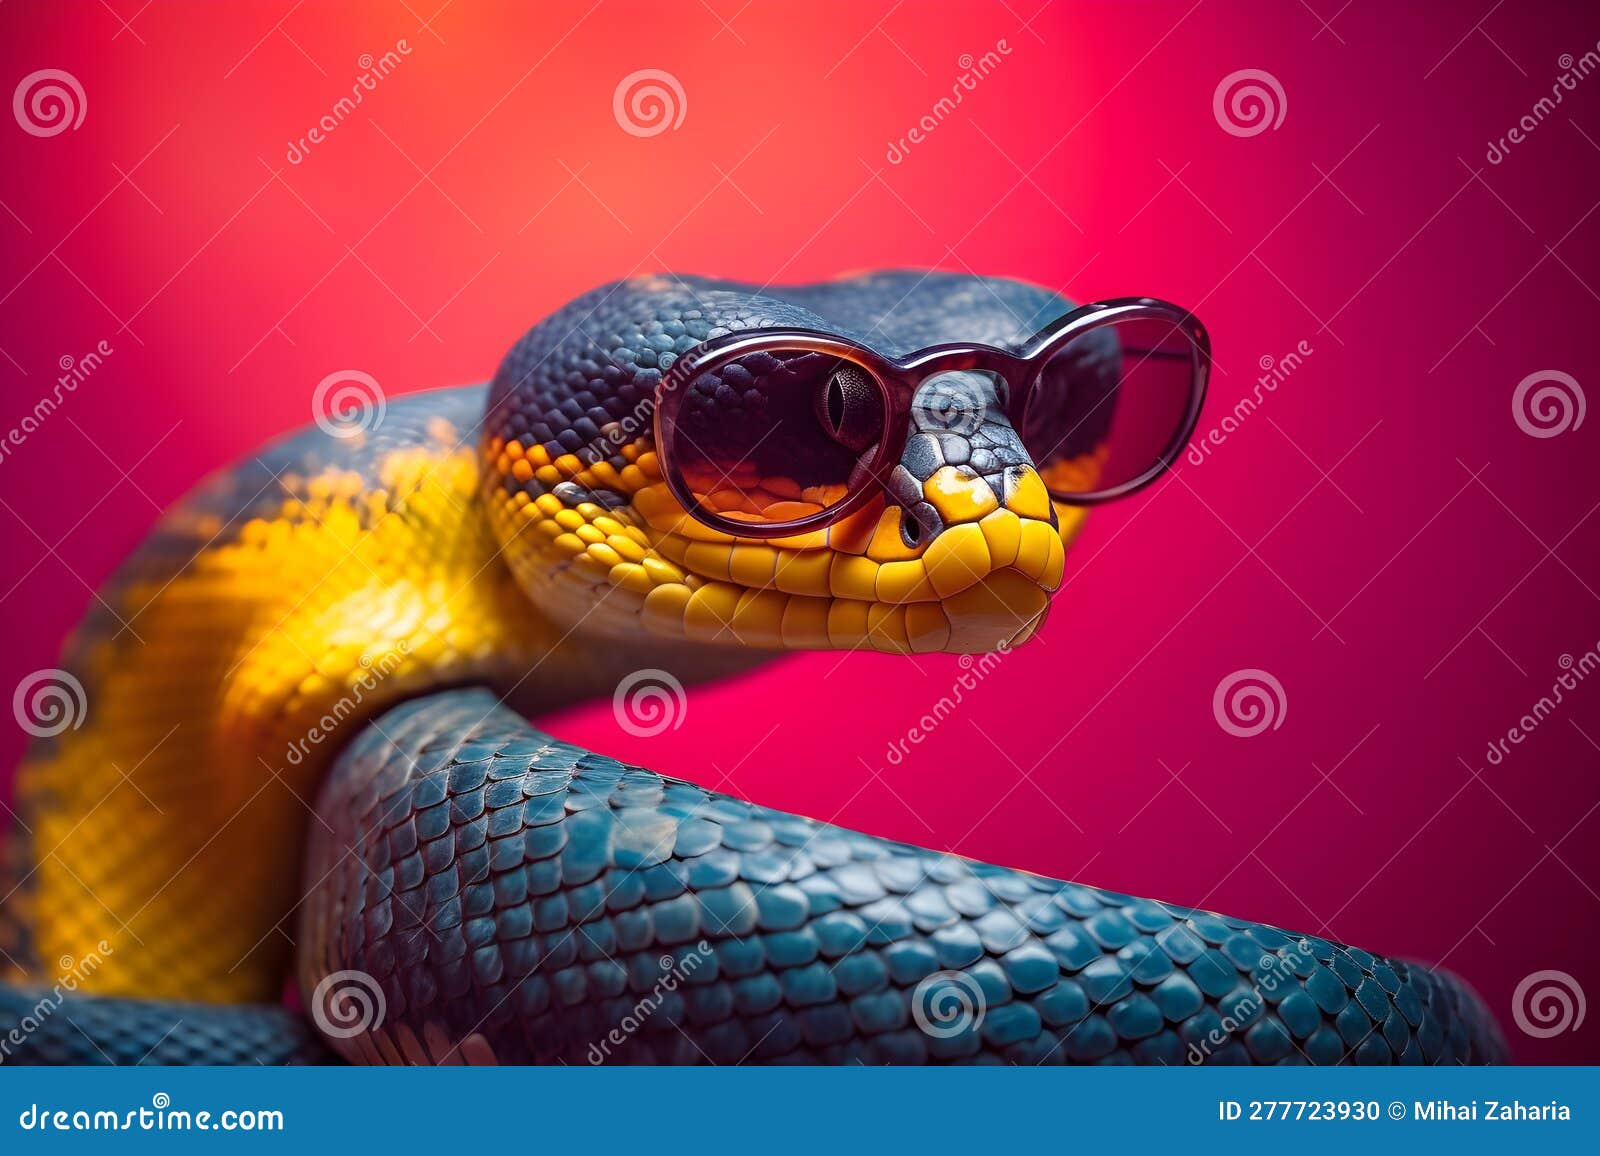 Cobra engraçada usando óculos escuros